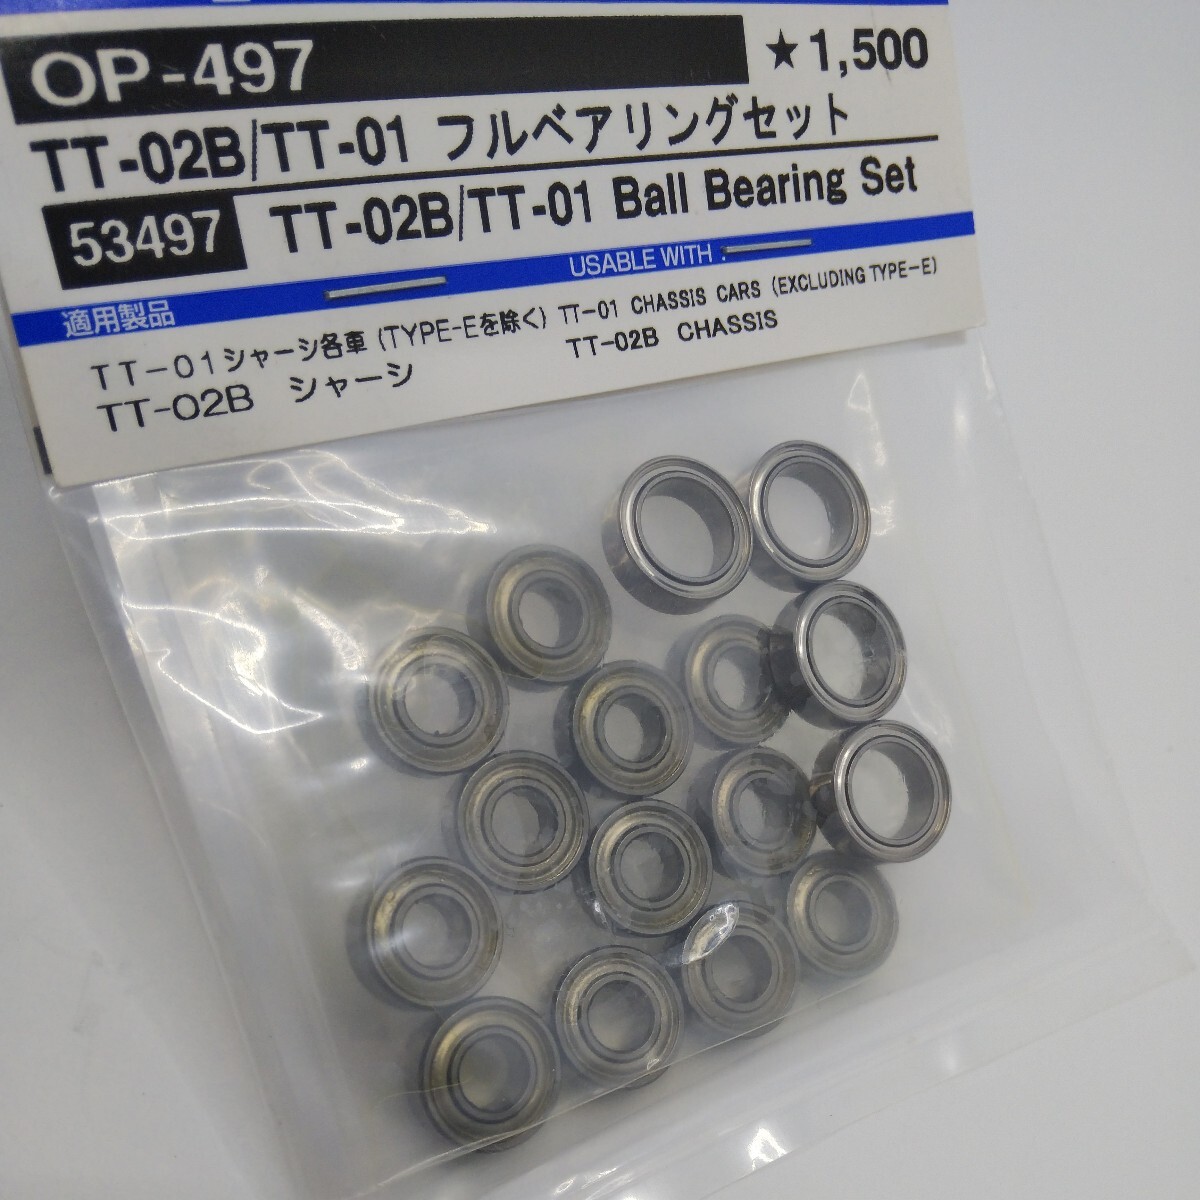 17[ Tamiya ]OP-497 TT-02B|TT-01 full bearing set 